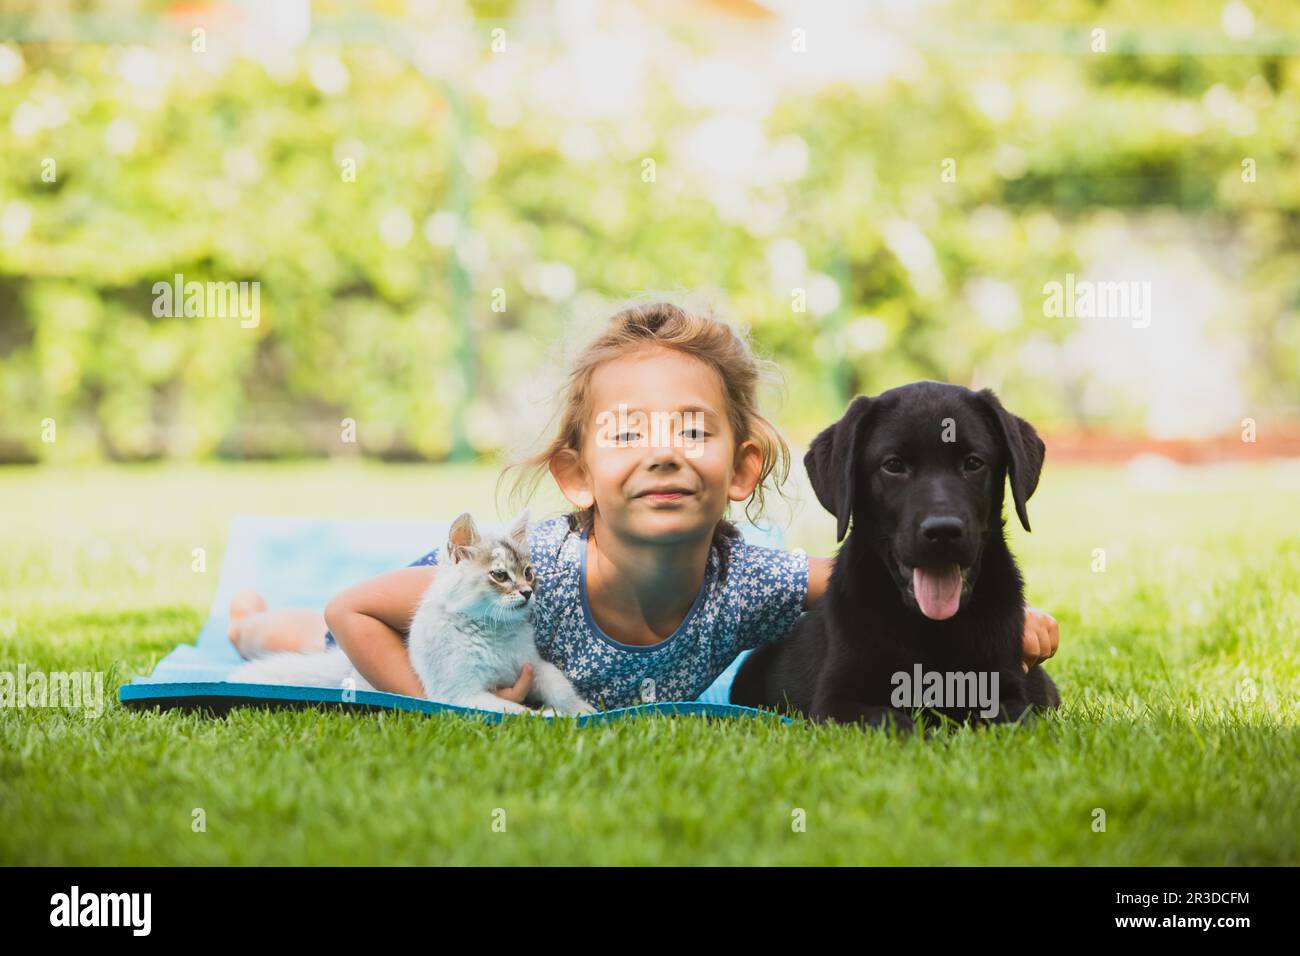 Carino ragazza prescolare giocare con gli animali domestici su erba fresca Foto Stock